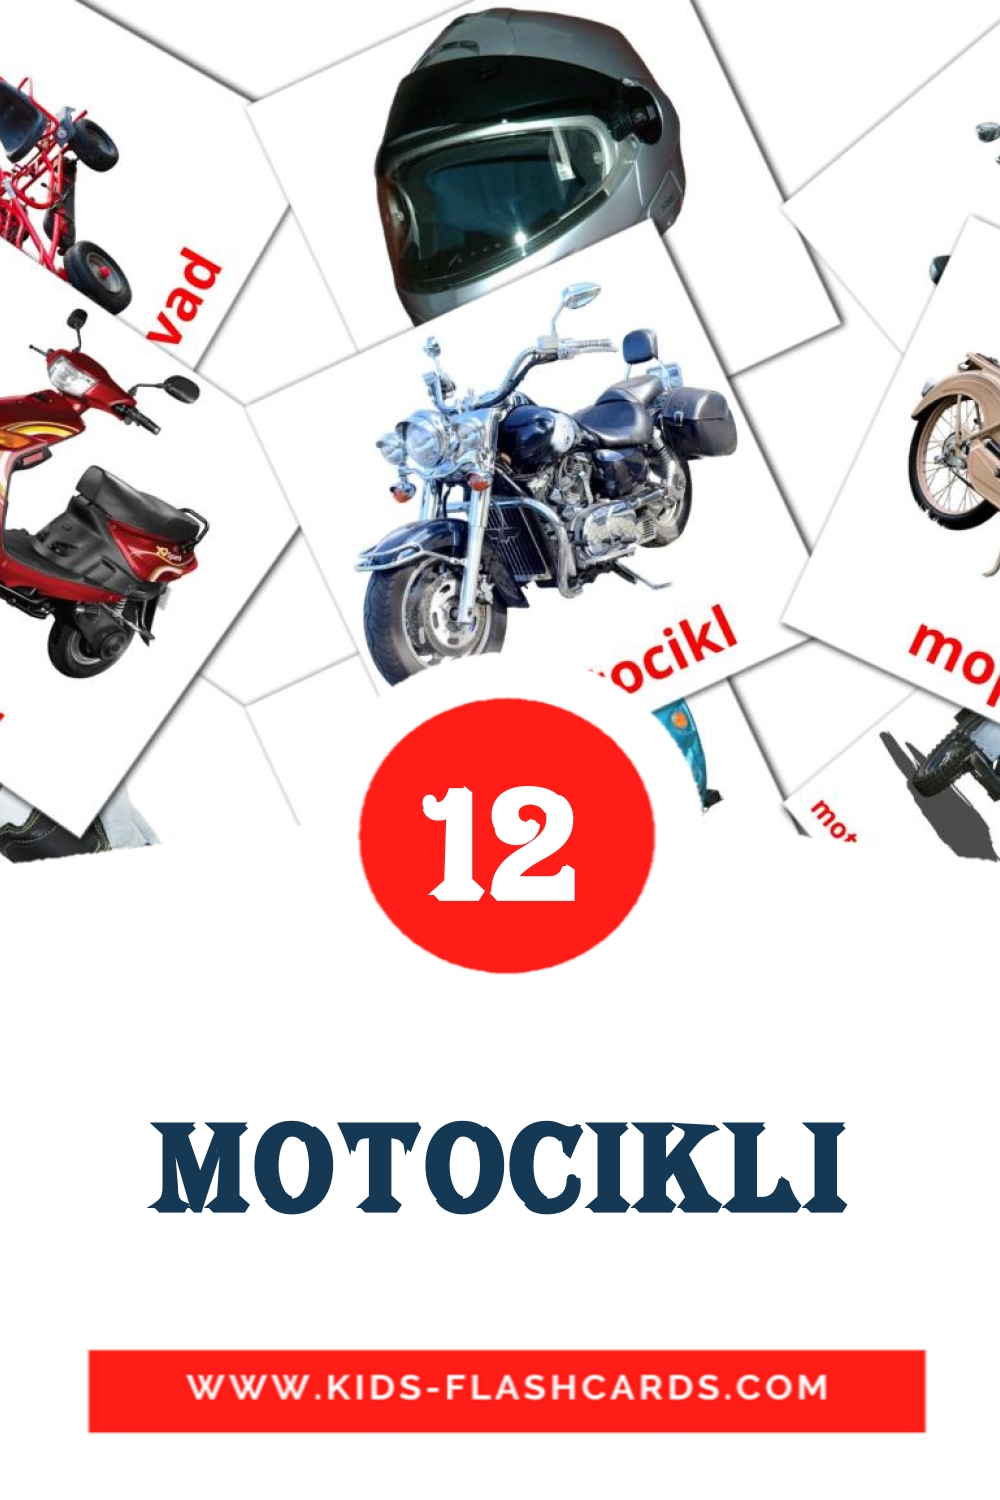 12 tarjetas didacticas de Motocikli para el jardín de infancia en serbio